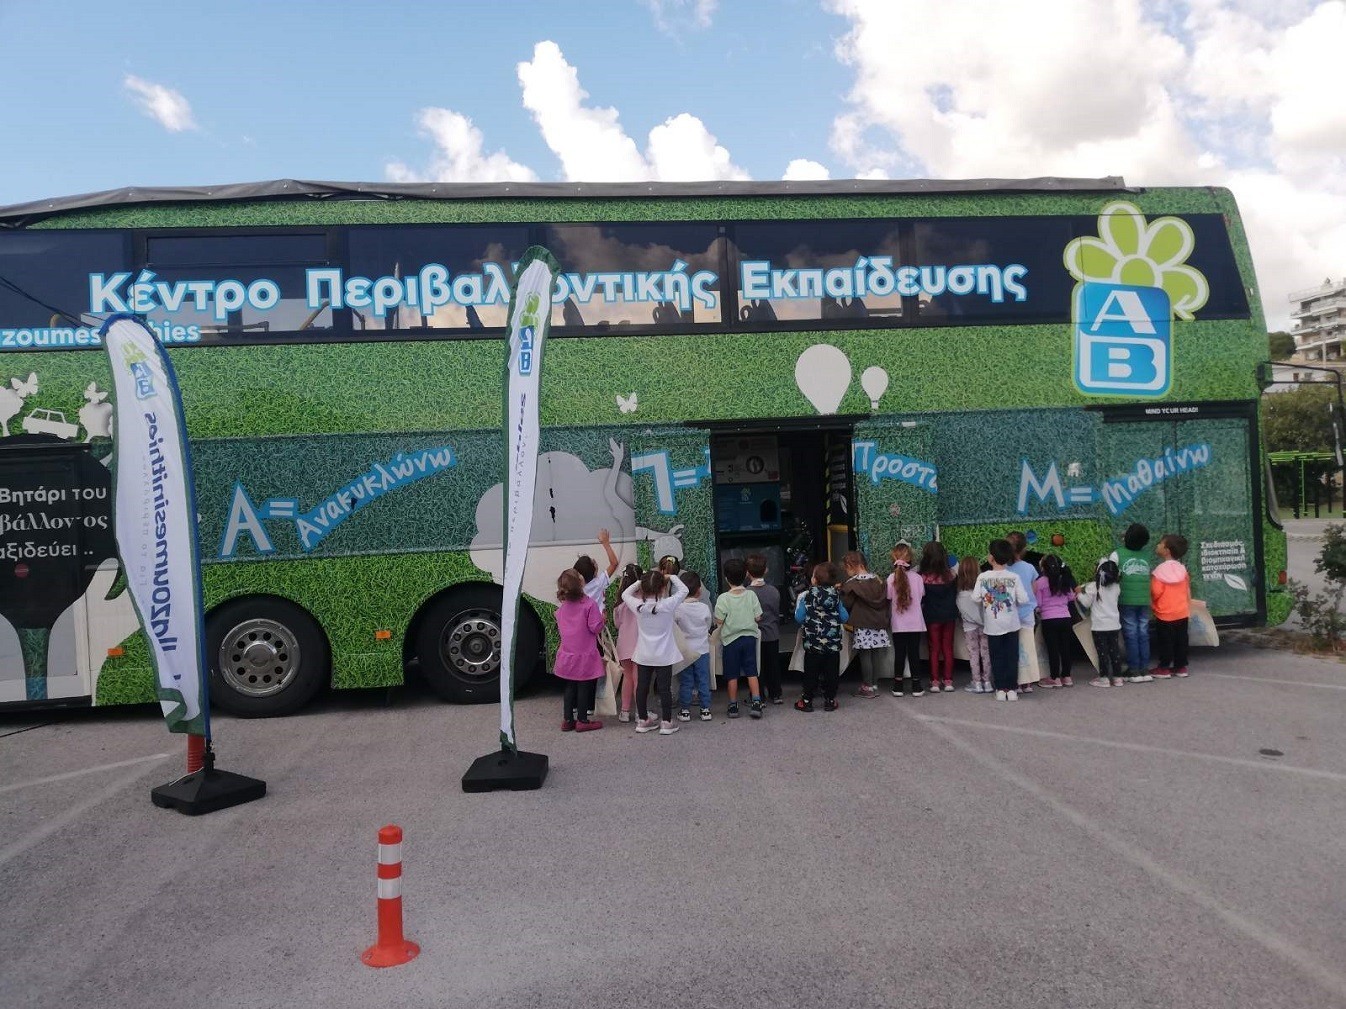 Κινητό Κέντρο Περιβαλλοντικής Εκπαίδευσης και Ανακύκλωσης: Ξεκινά επισκέψεις στα σχολεία από τον Δήμο Ραφήνας – Πικερμίου (pics)